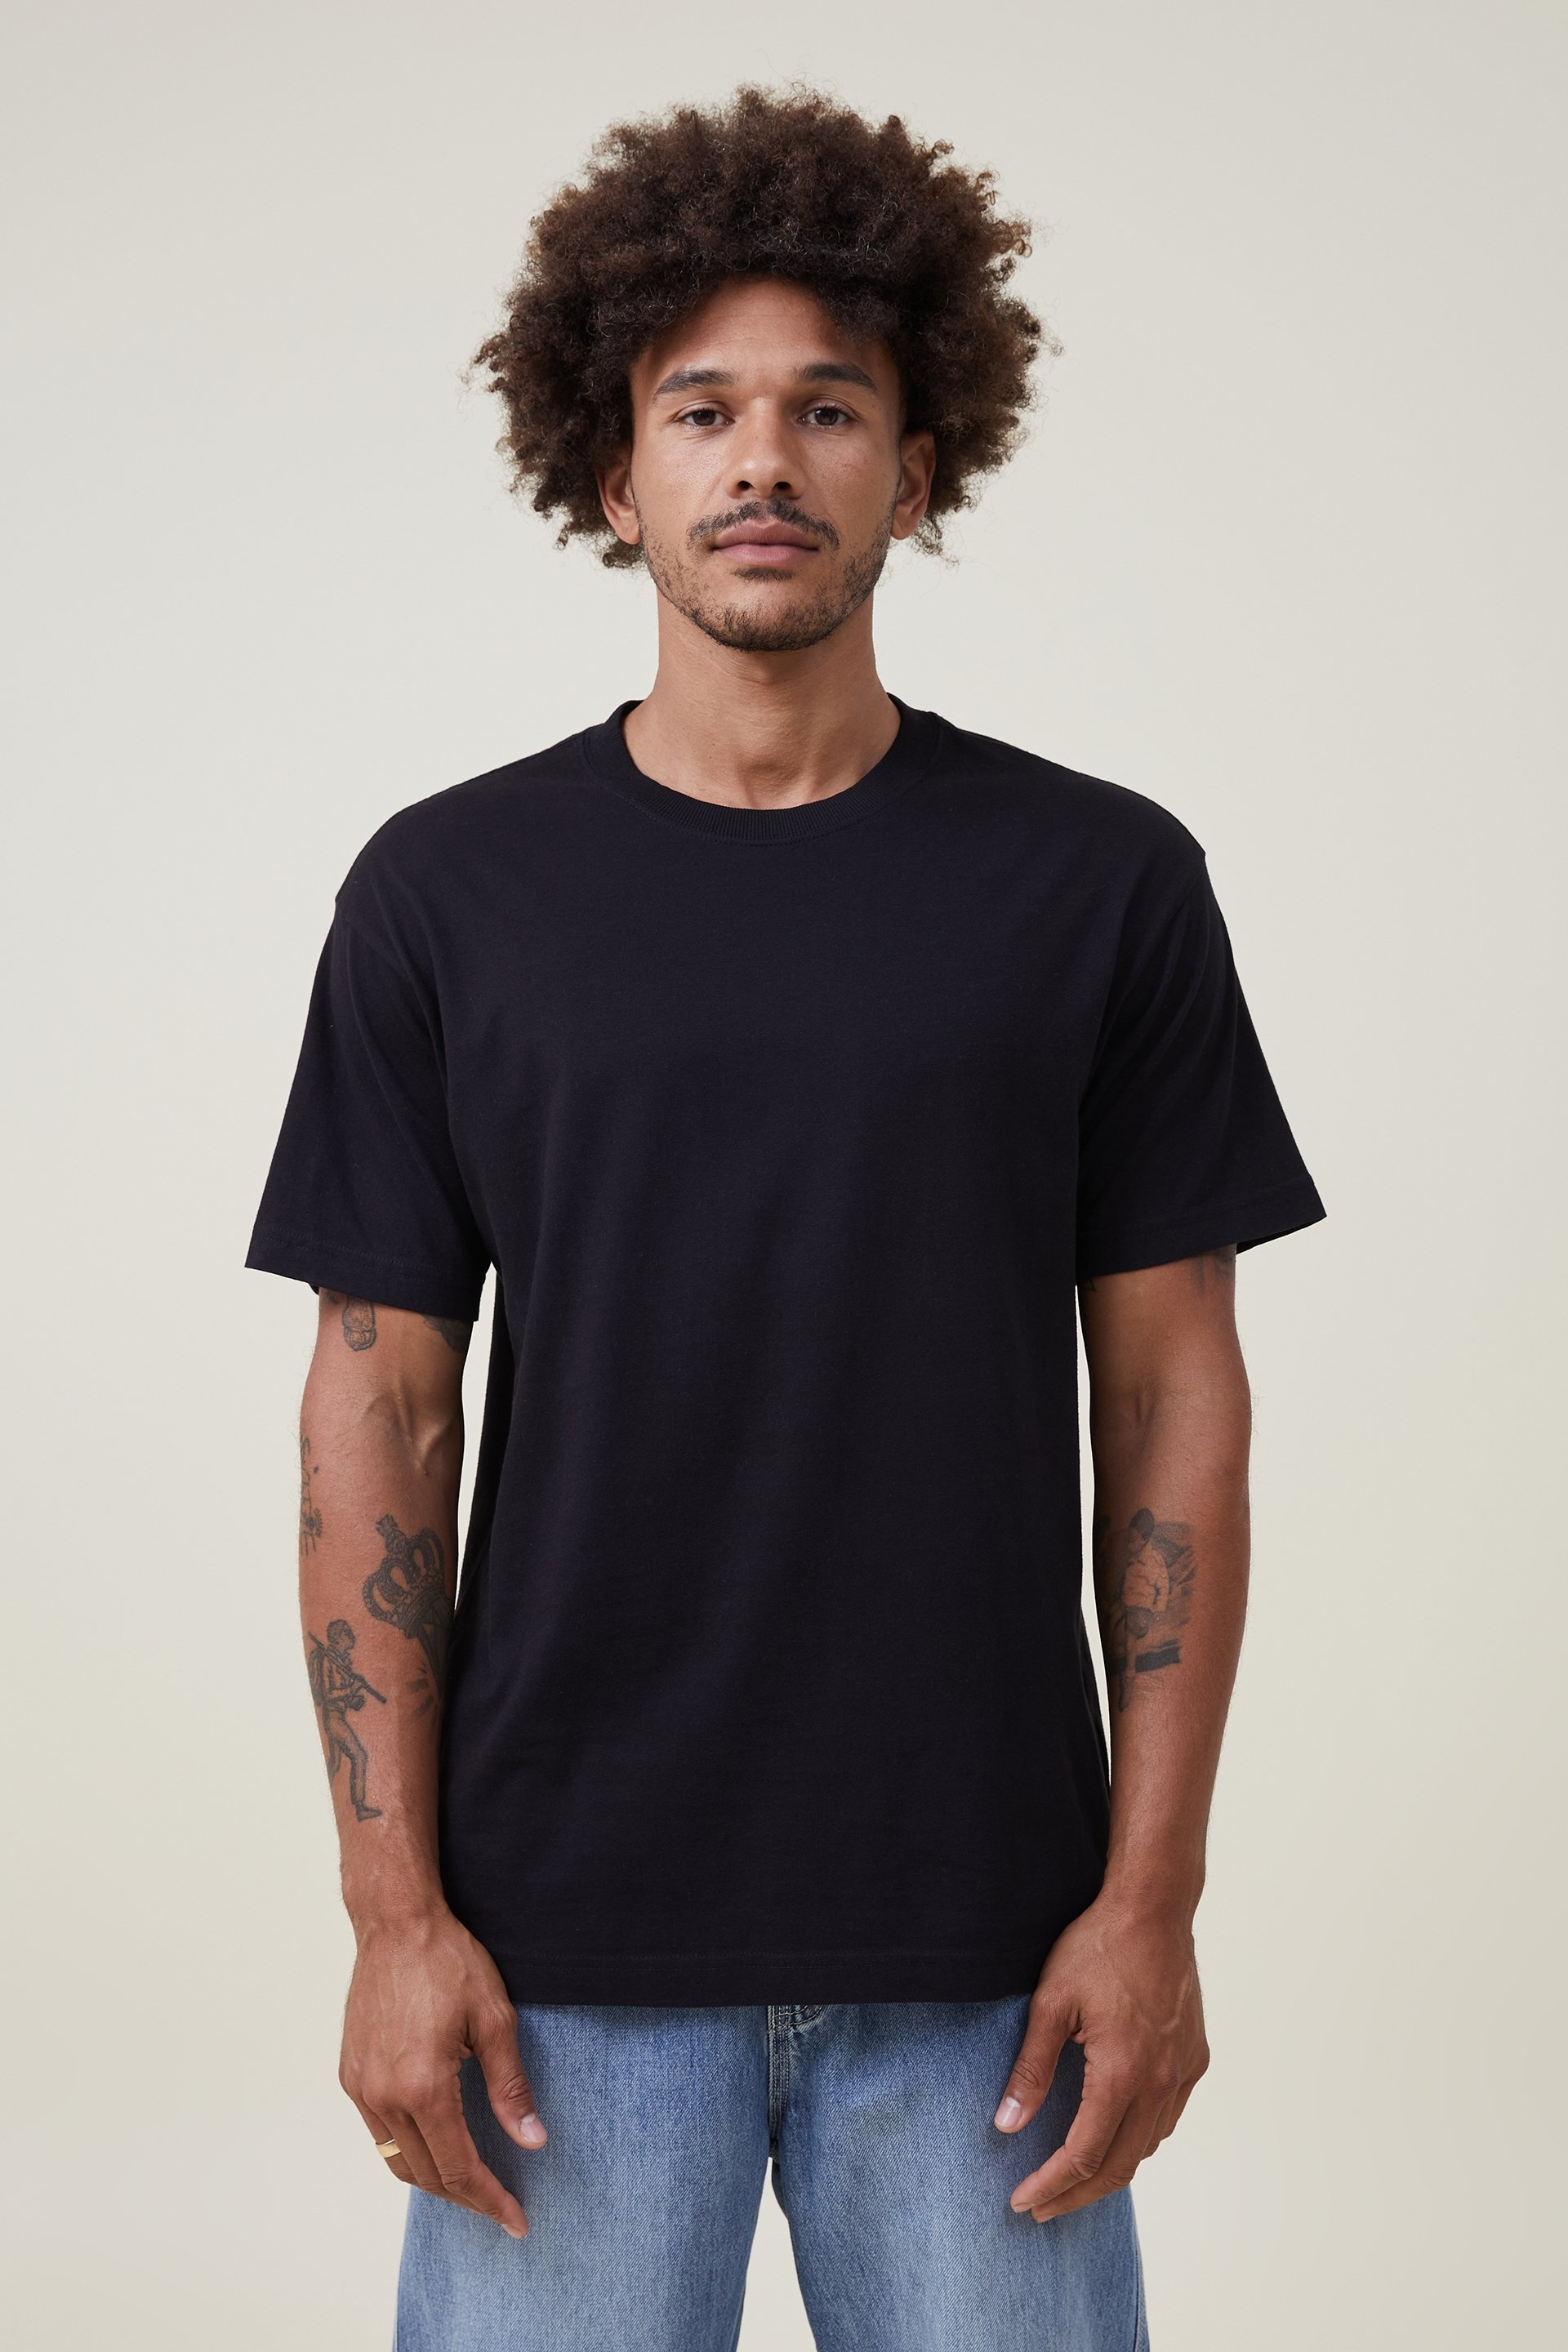 Men’s Loose Fit Cotton Jersey Print T-Shirt